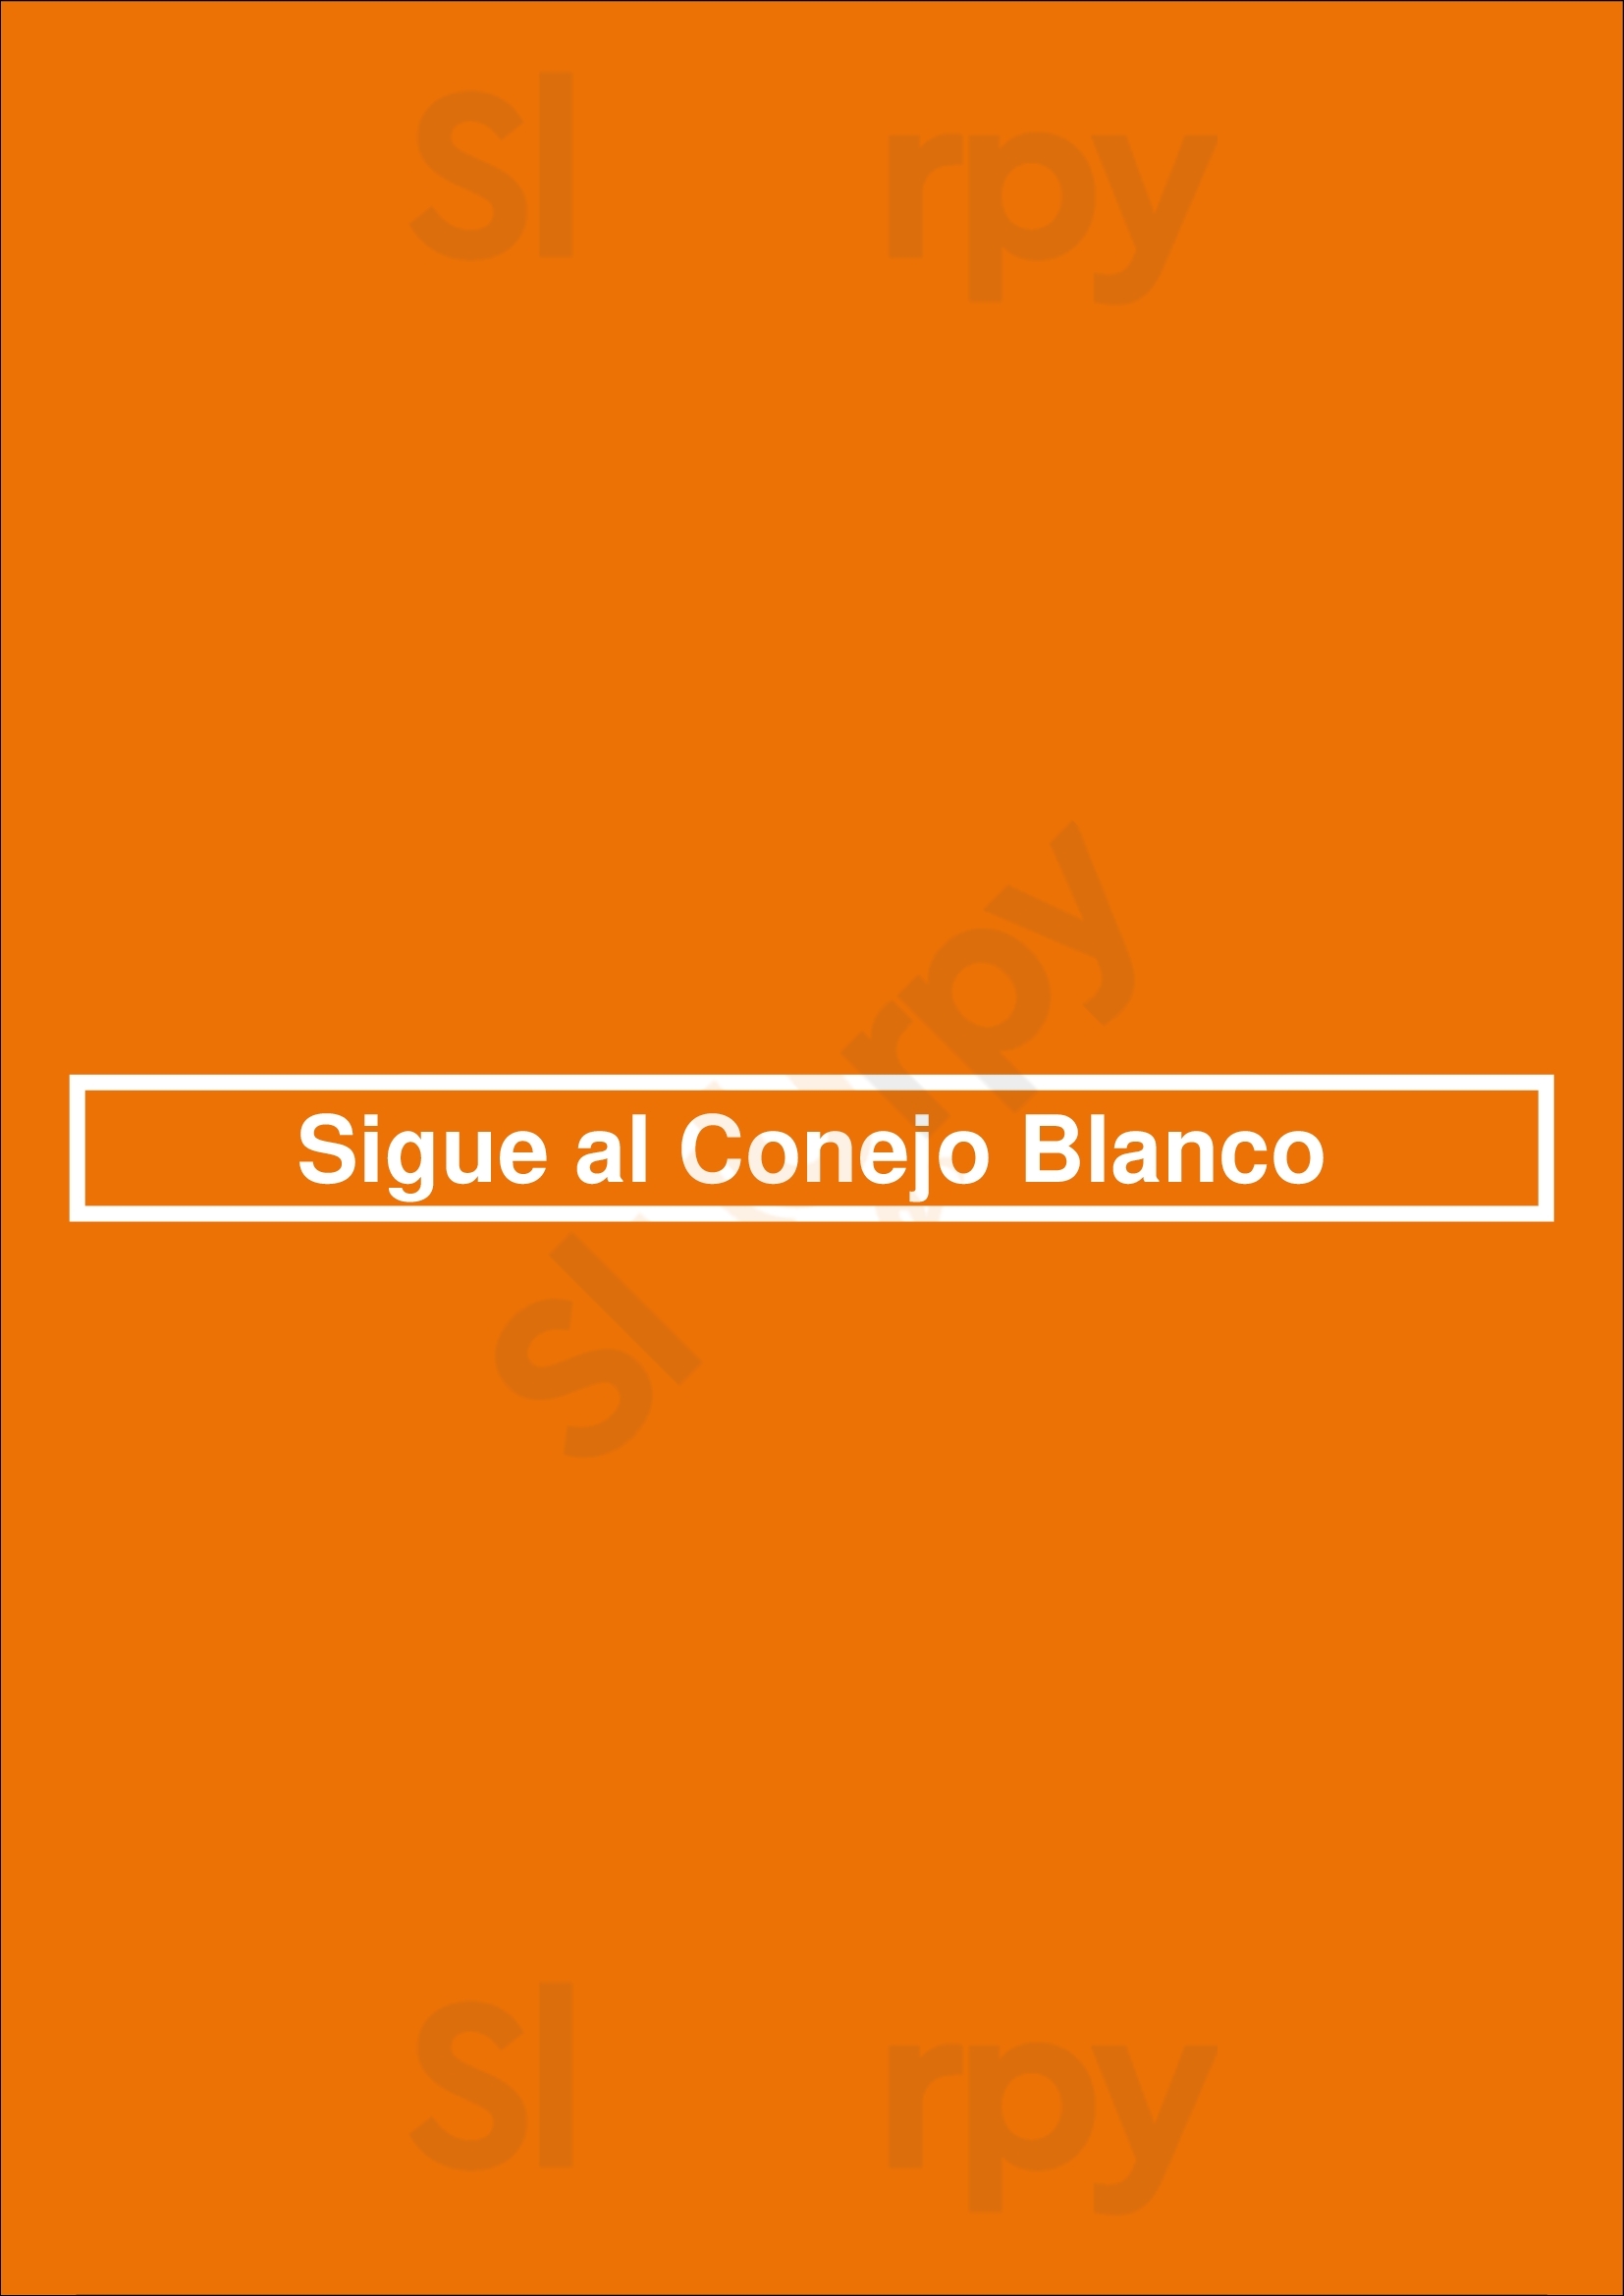 Sigue Al Conejo Blanco Buenos Aires Menu - 1